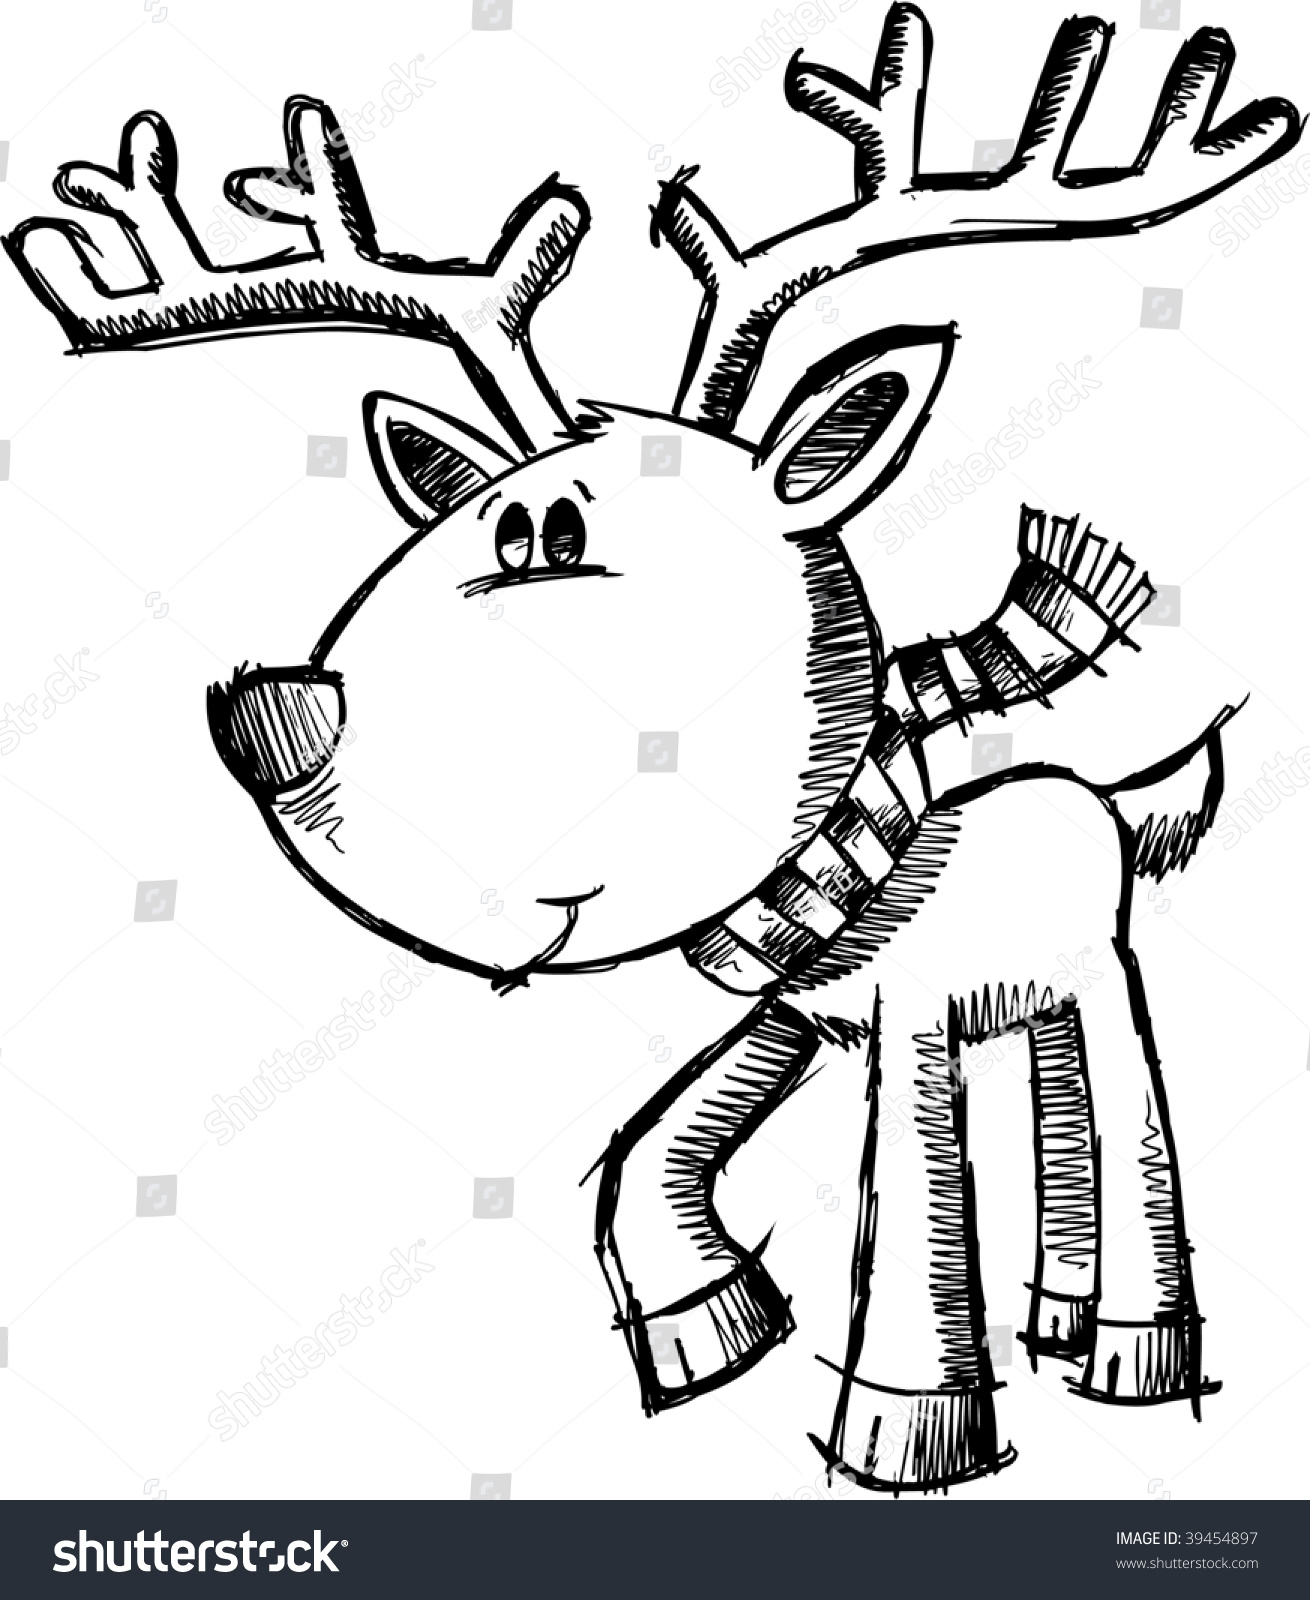 Doodle Sketchy Christmas Deer Vector Illustration - 39454897 : Shutterstock